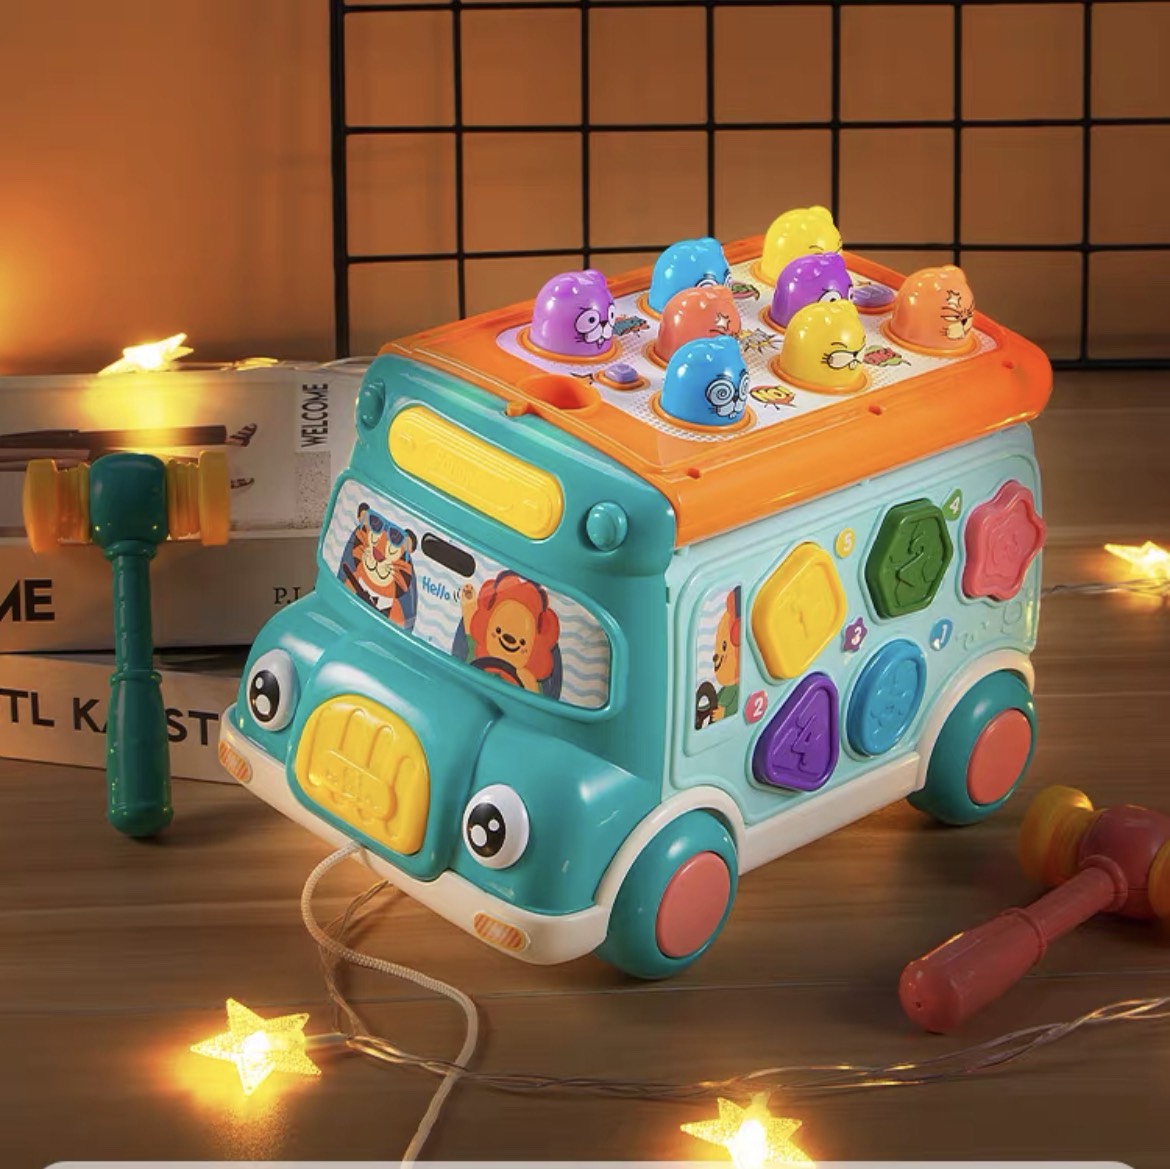 Đồ chơi xe bus đa năng 7in1 có đèn phát nhạc piano, trống, đập chuột - Đồ chơi giáo dục sớm cho bé từ 3 tháng tuổi